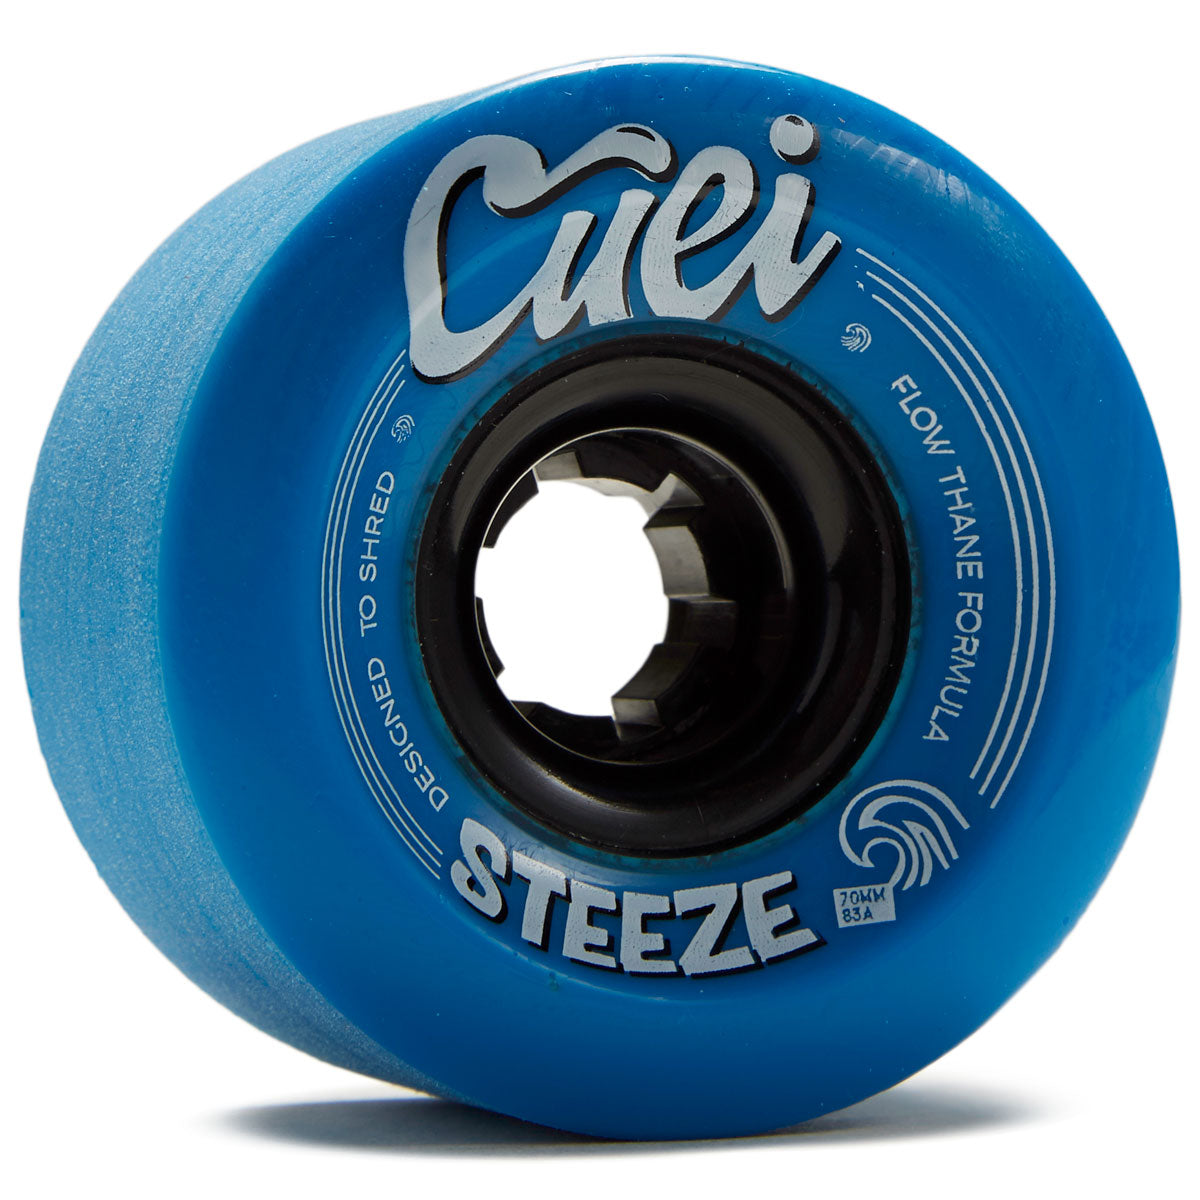 Cuei Steeze Freeride 83a Stoneground Longboard Wheels - Blue - 70mm image 1